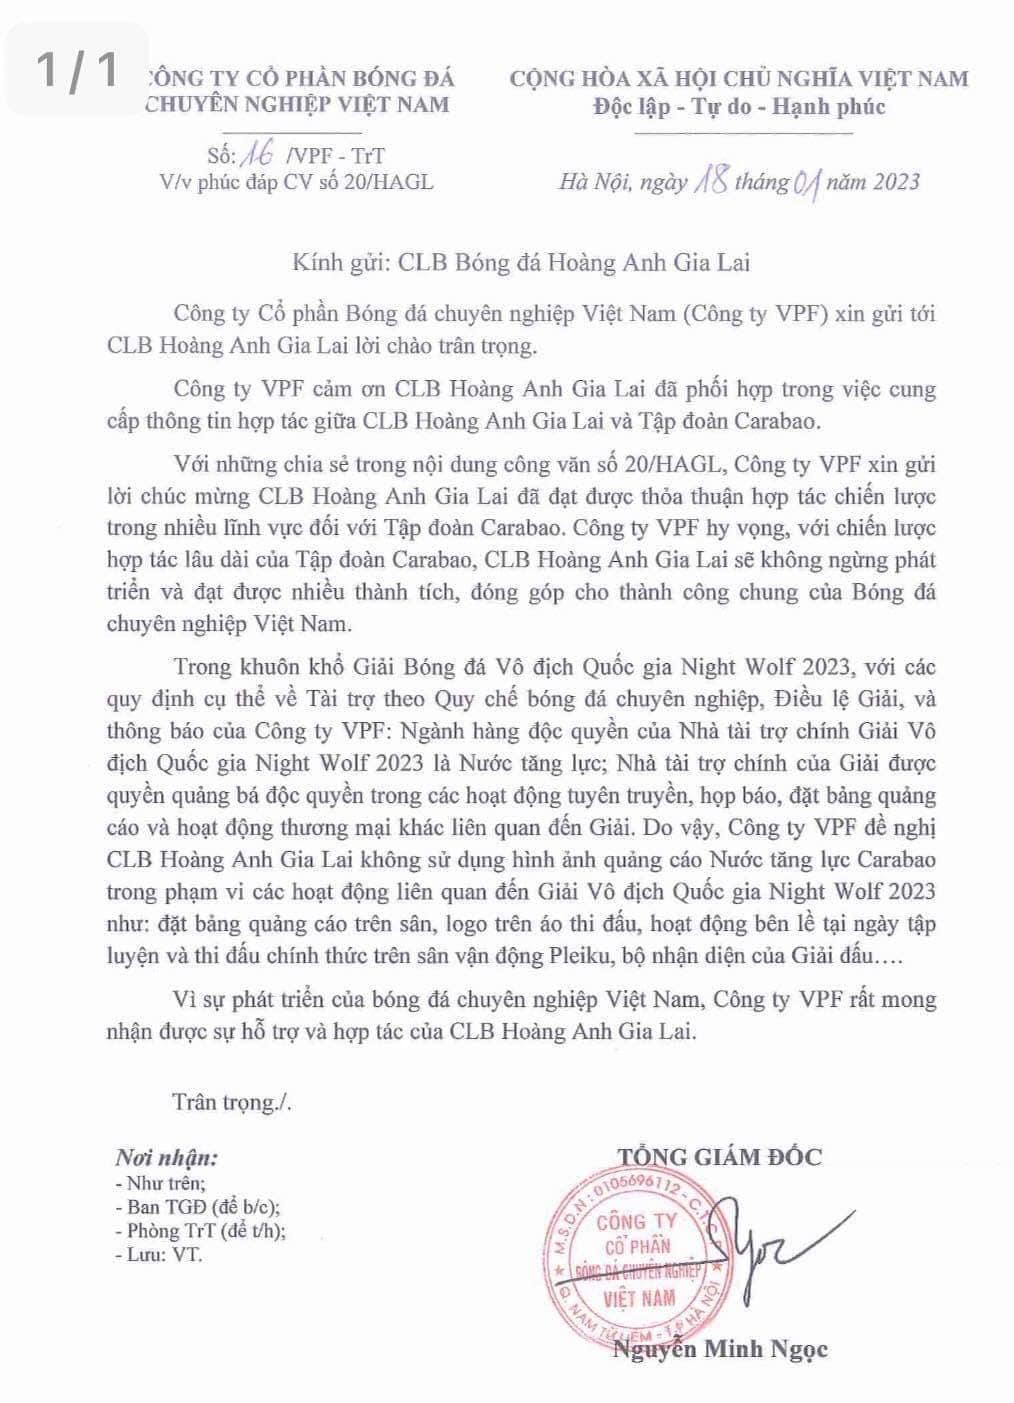 BLV Quang Huy: &quot;Tôi cảm giác VPF sai khi cấm HAGL quảng bá cho nhà tài trợ&quot; - Ảnh 1.